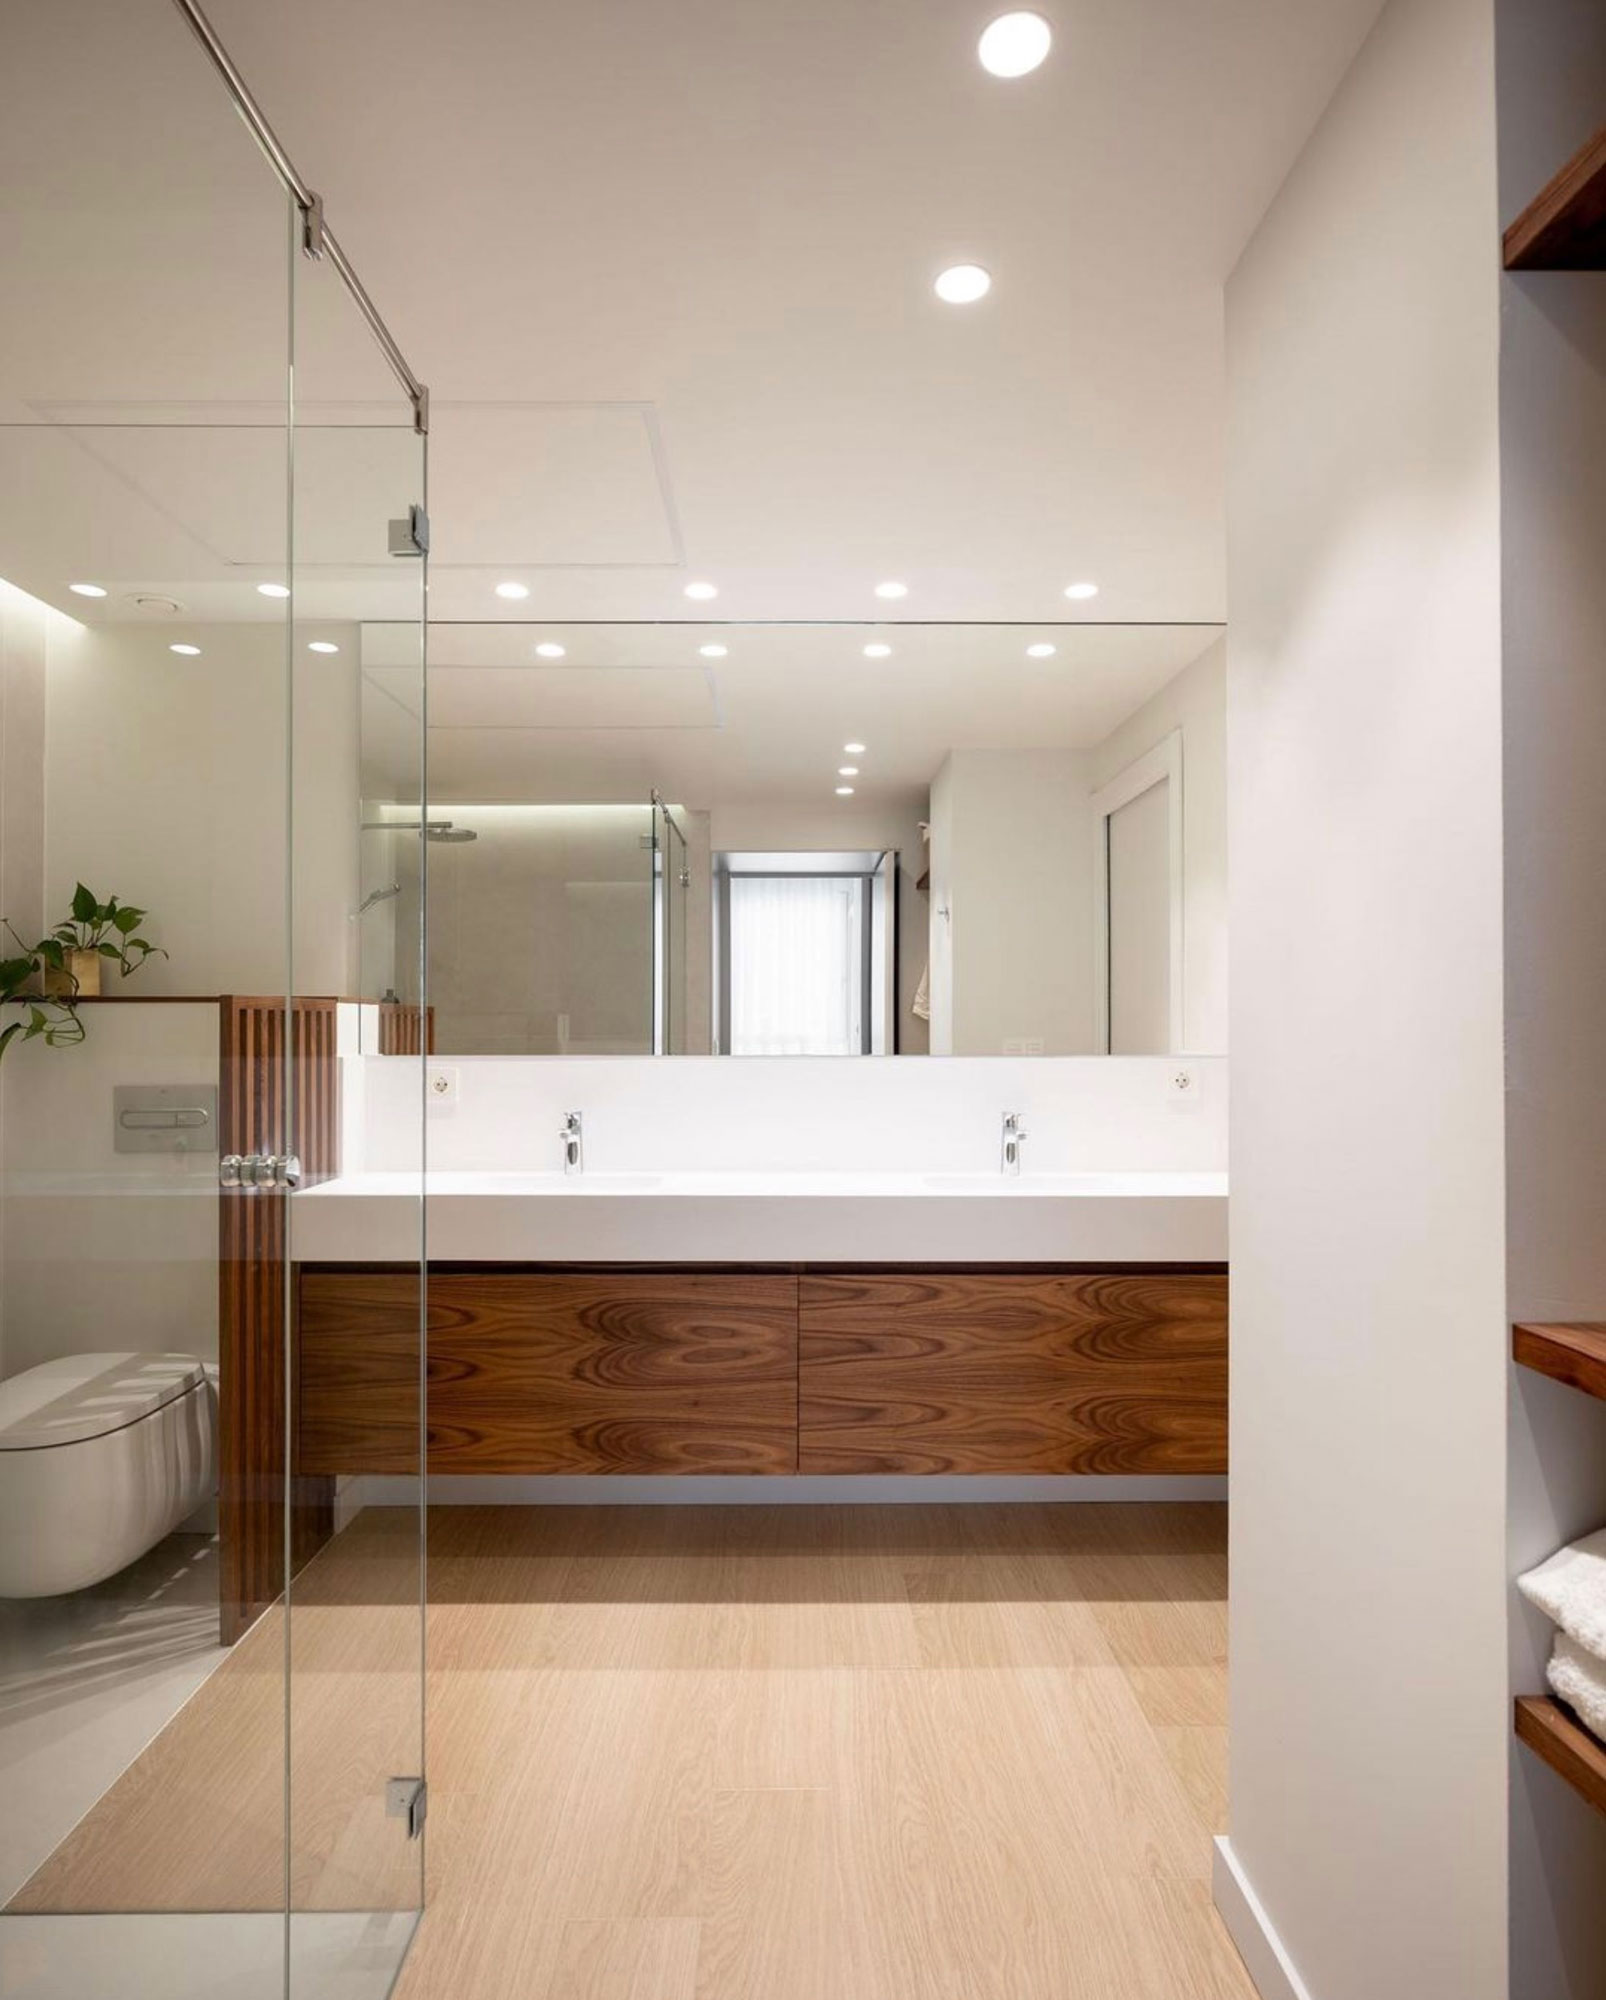 Tipos de muebles de baño: ¿Cuál se adapta mejor a tu hogar? - Materiales de  construcción Calabuig